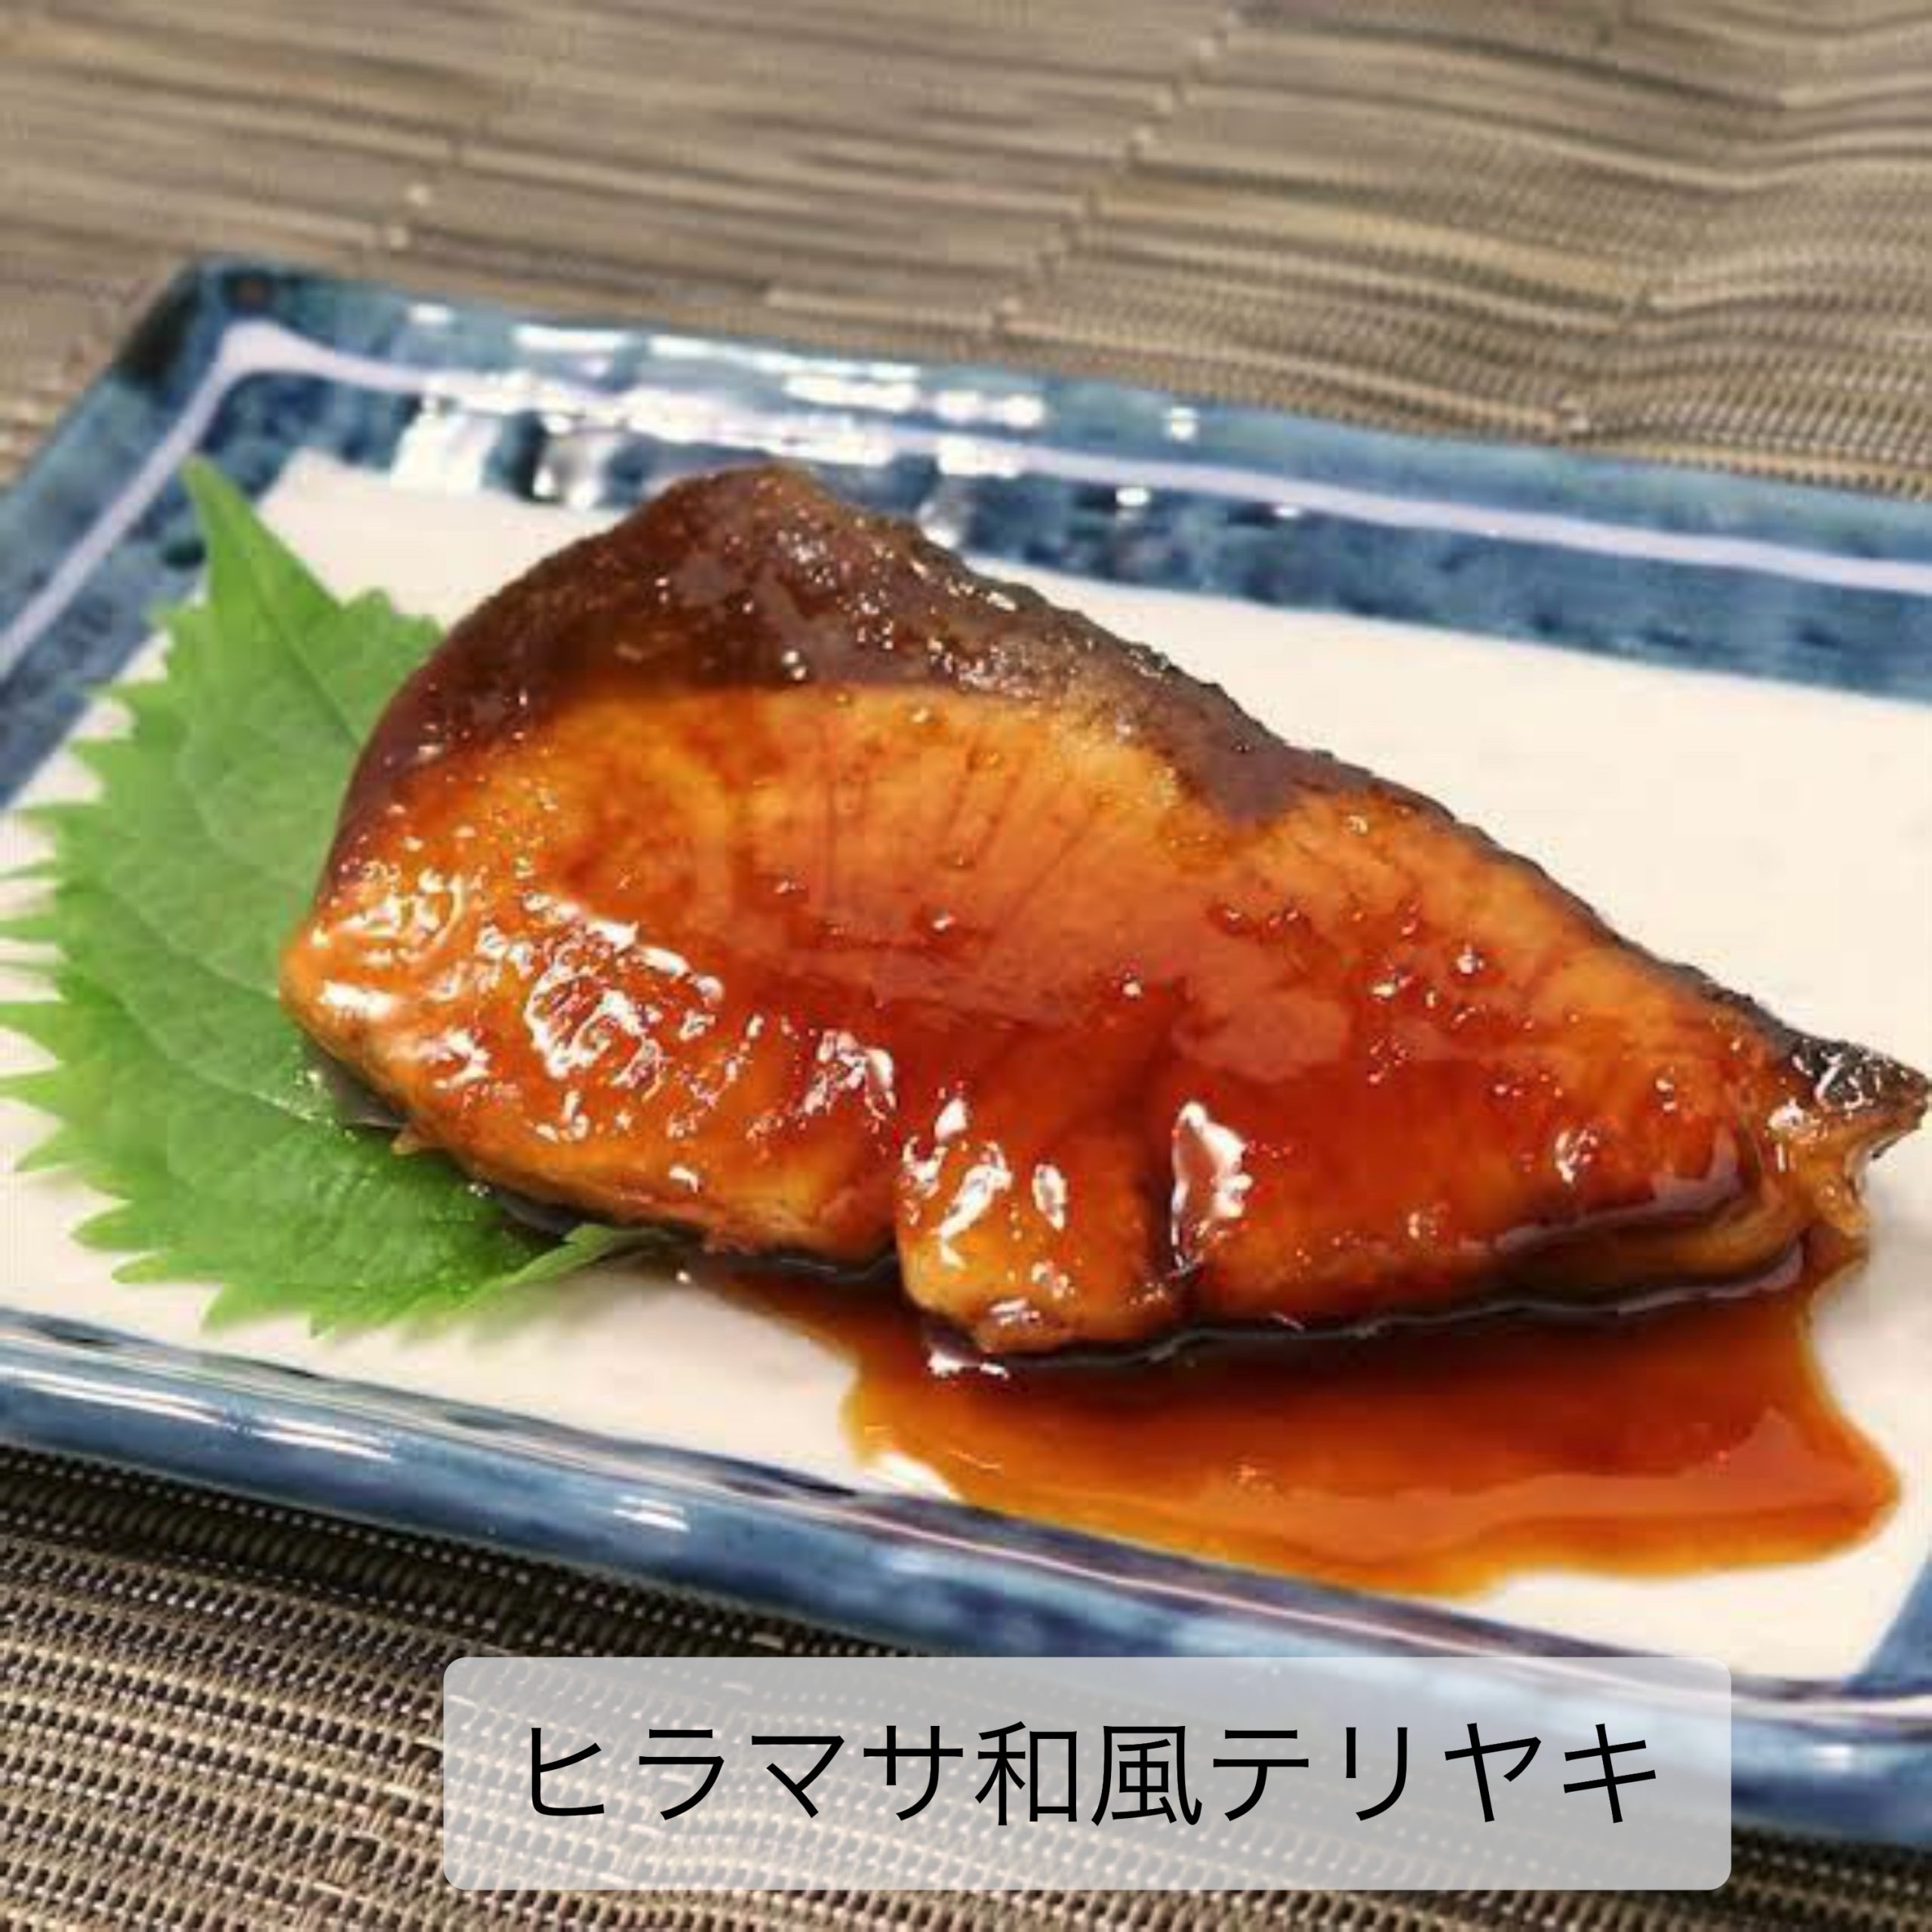 ヒラマサ和風テリヤキ 海の恵み 食の底力 Japan 公式レシピサイト